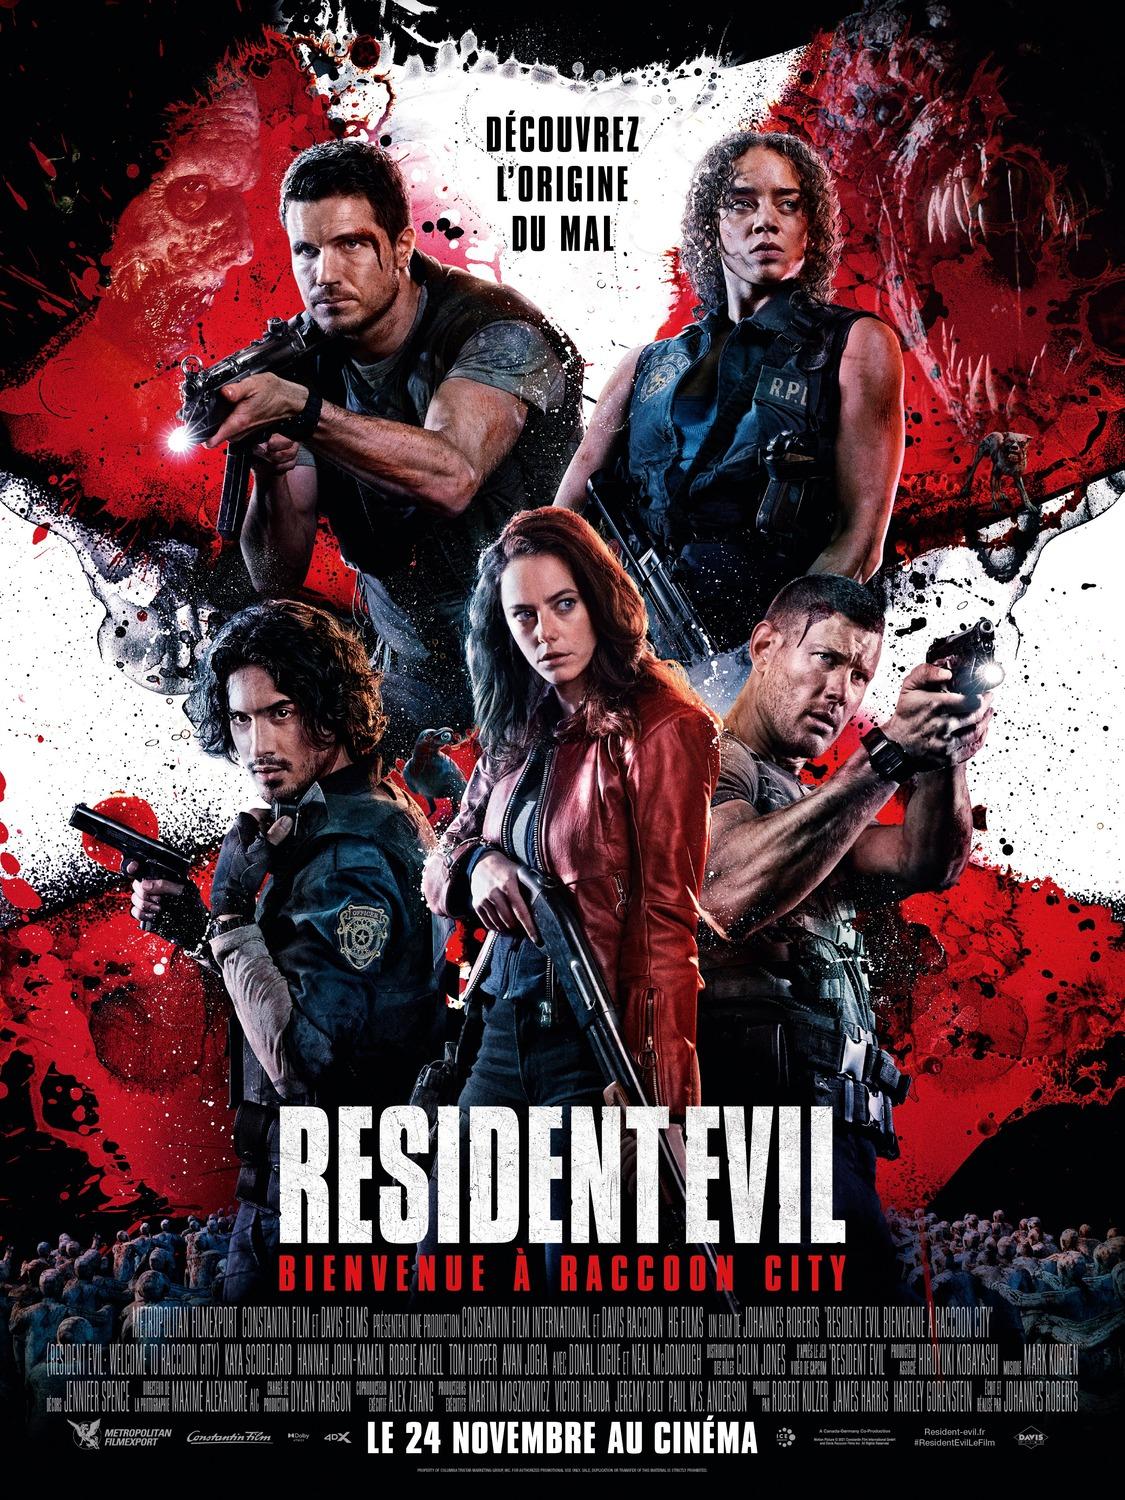 Постер фильма Обитель зла: Раккун Сити | Resident Evil: Welcome to Raccoon City